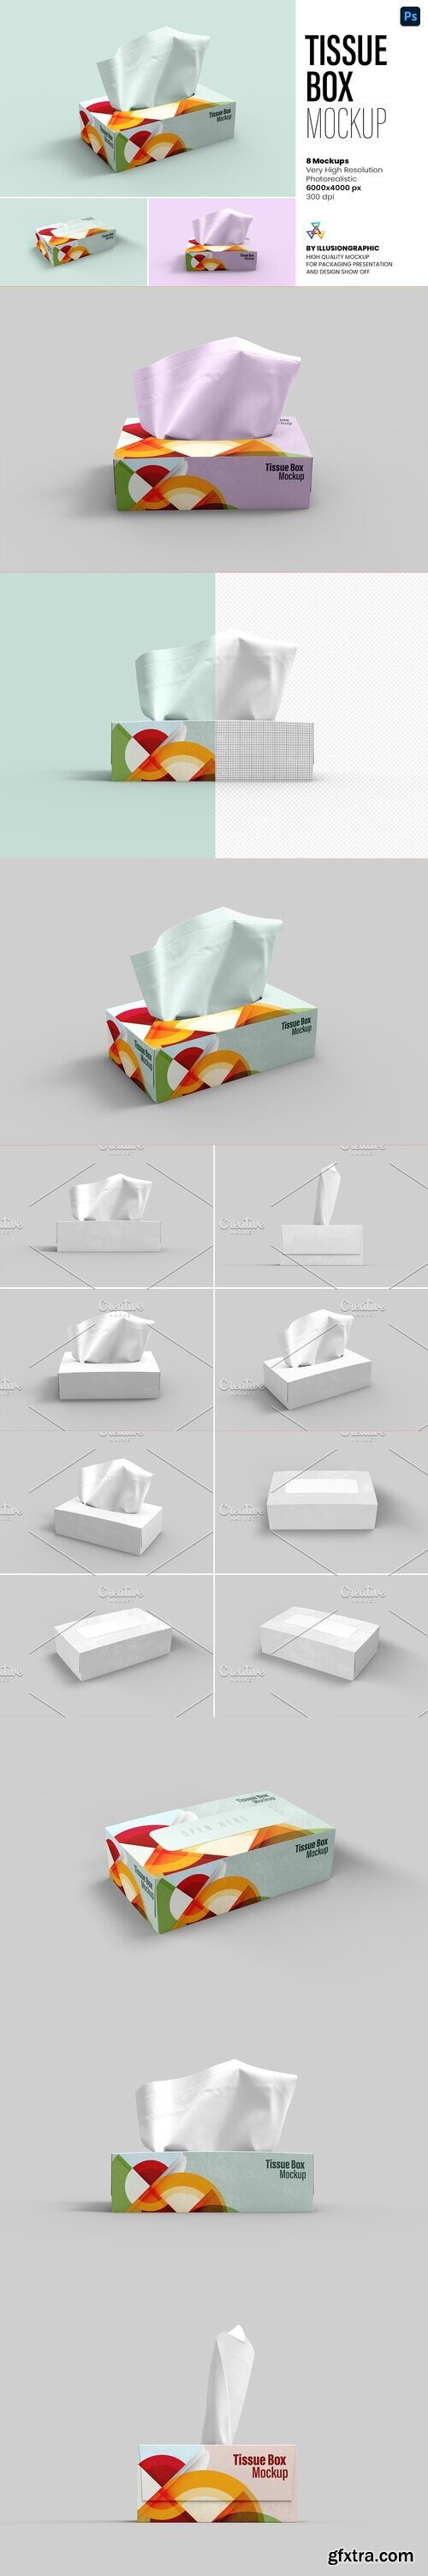 CreativeMarket - Tissue Box Mockup - 8 views 7363613